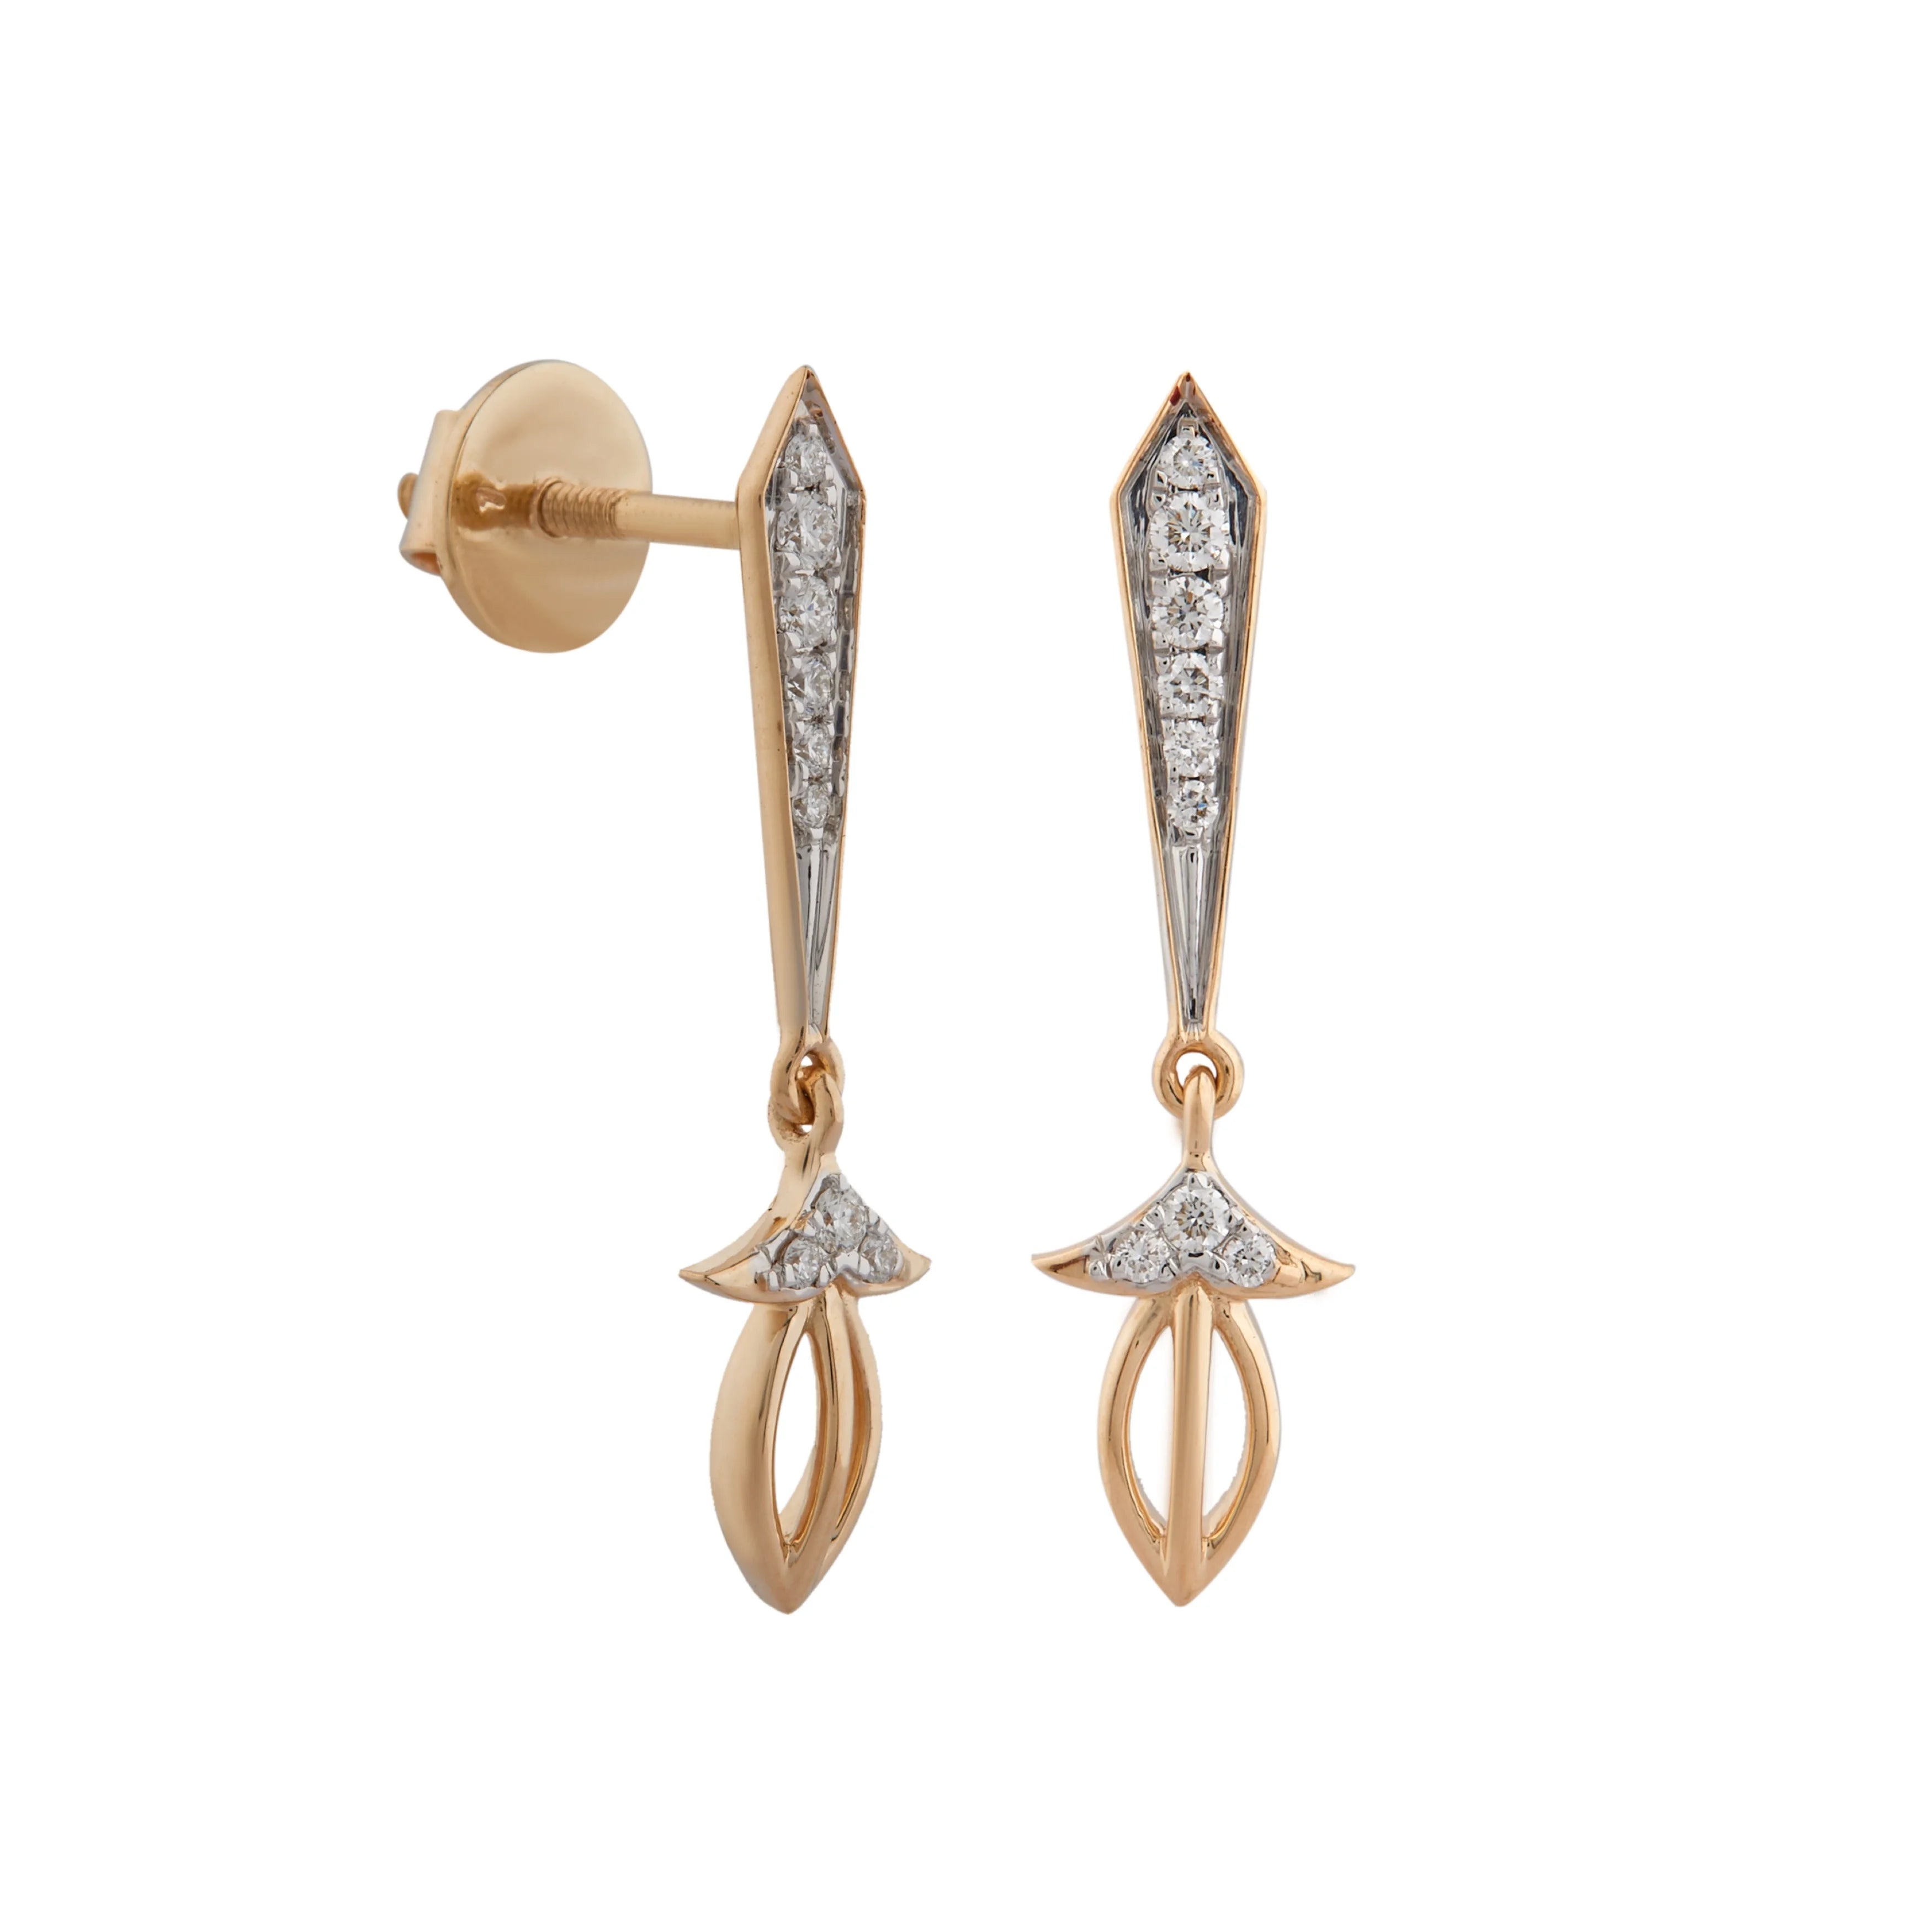 Tadeonal Diamond Earring for girl